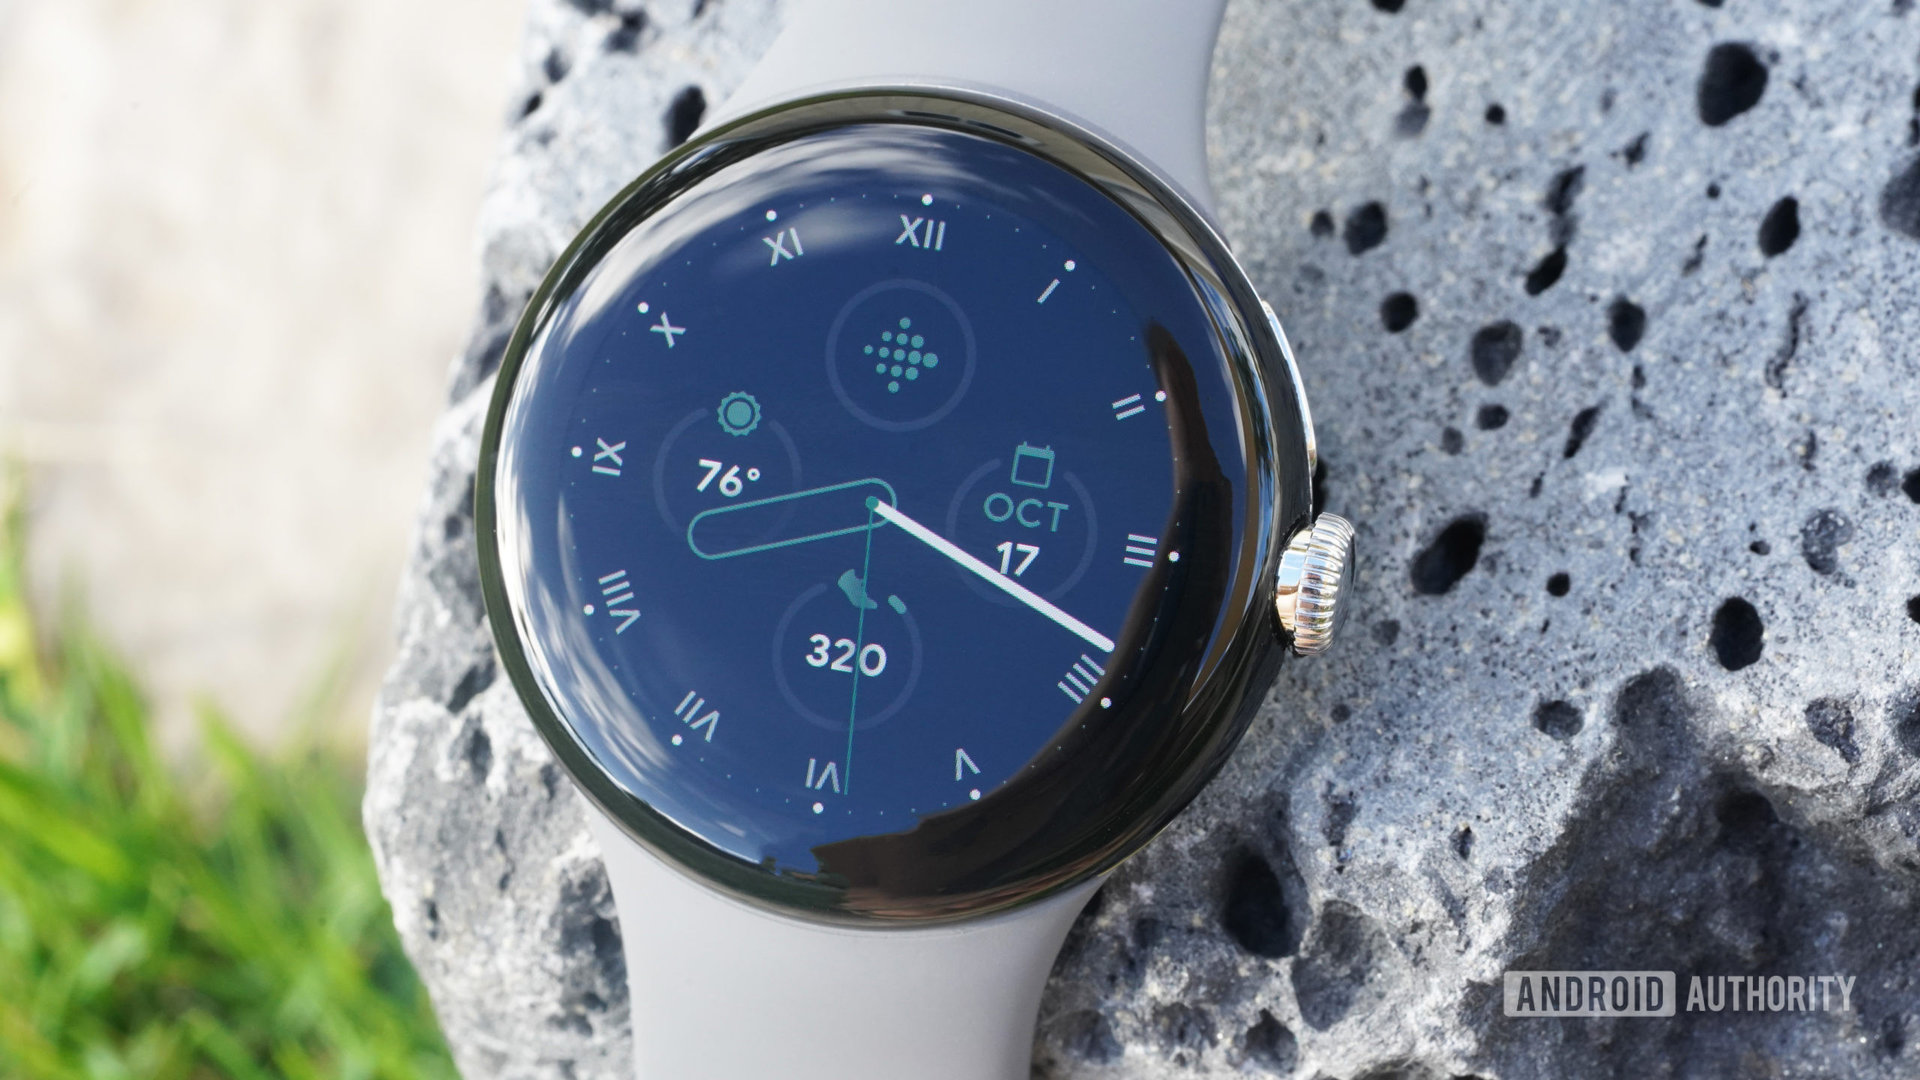 Google像素手表放在熔岩岩石上显示手表面。